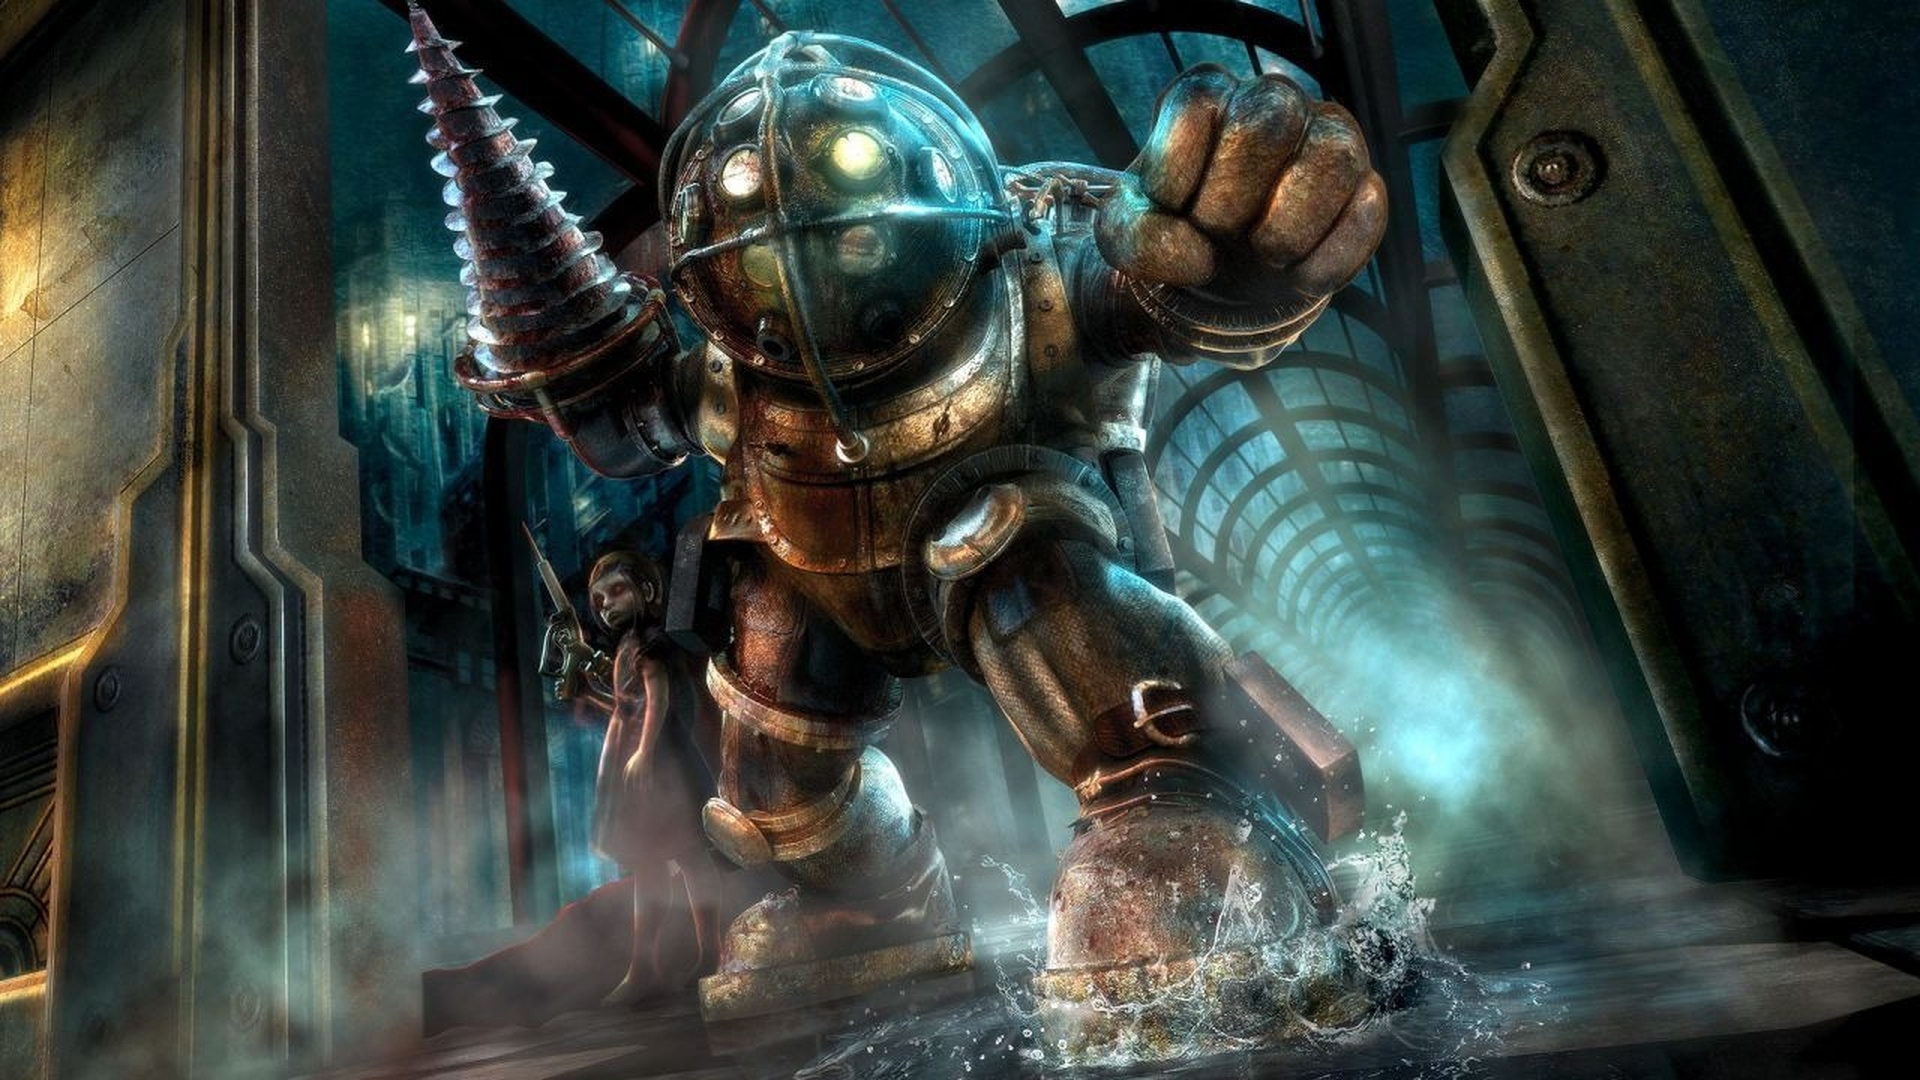 В этой статье мы расскажем о бесплатной раздаче Bioshock The Collection Epic Games, которая является частью раздачи загадочных игр от Epic Games.